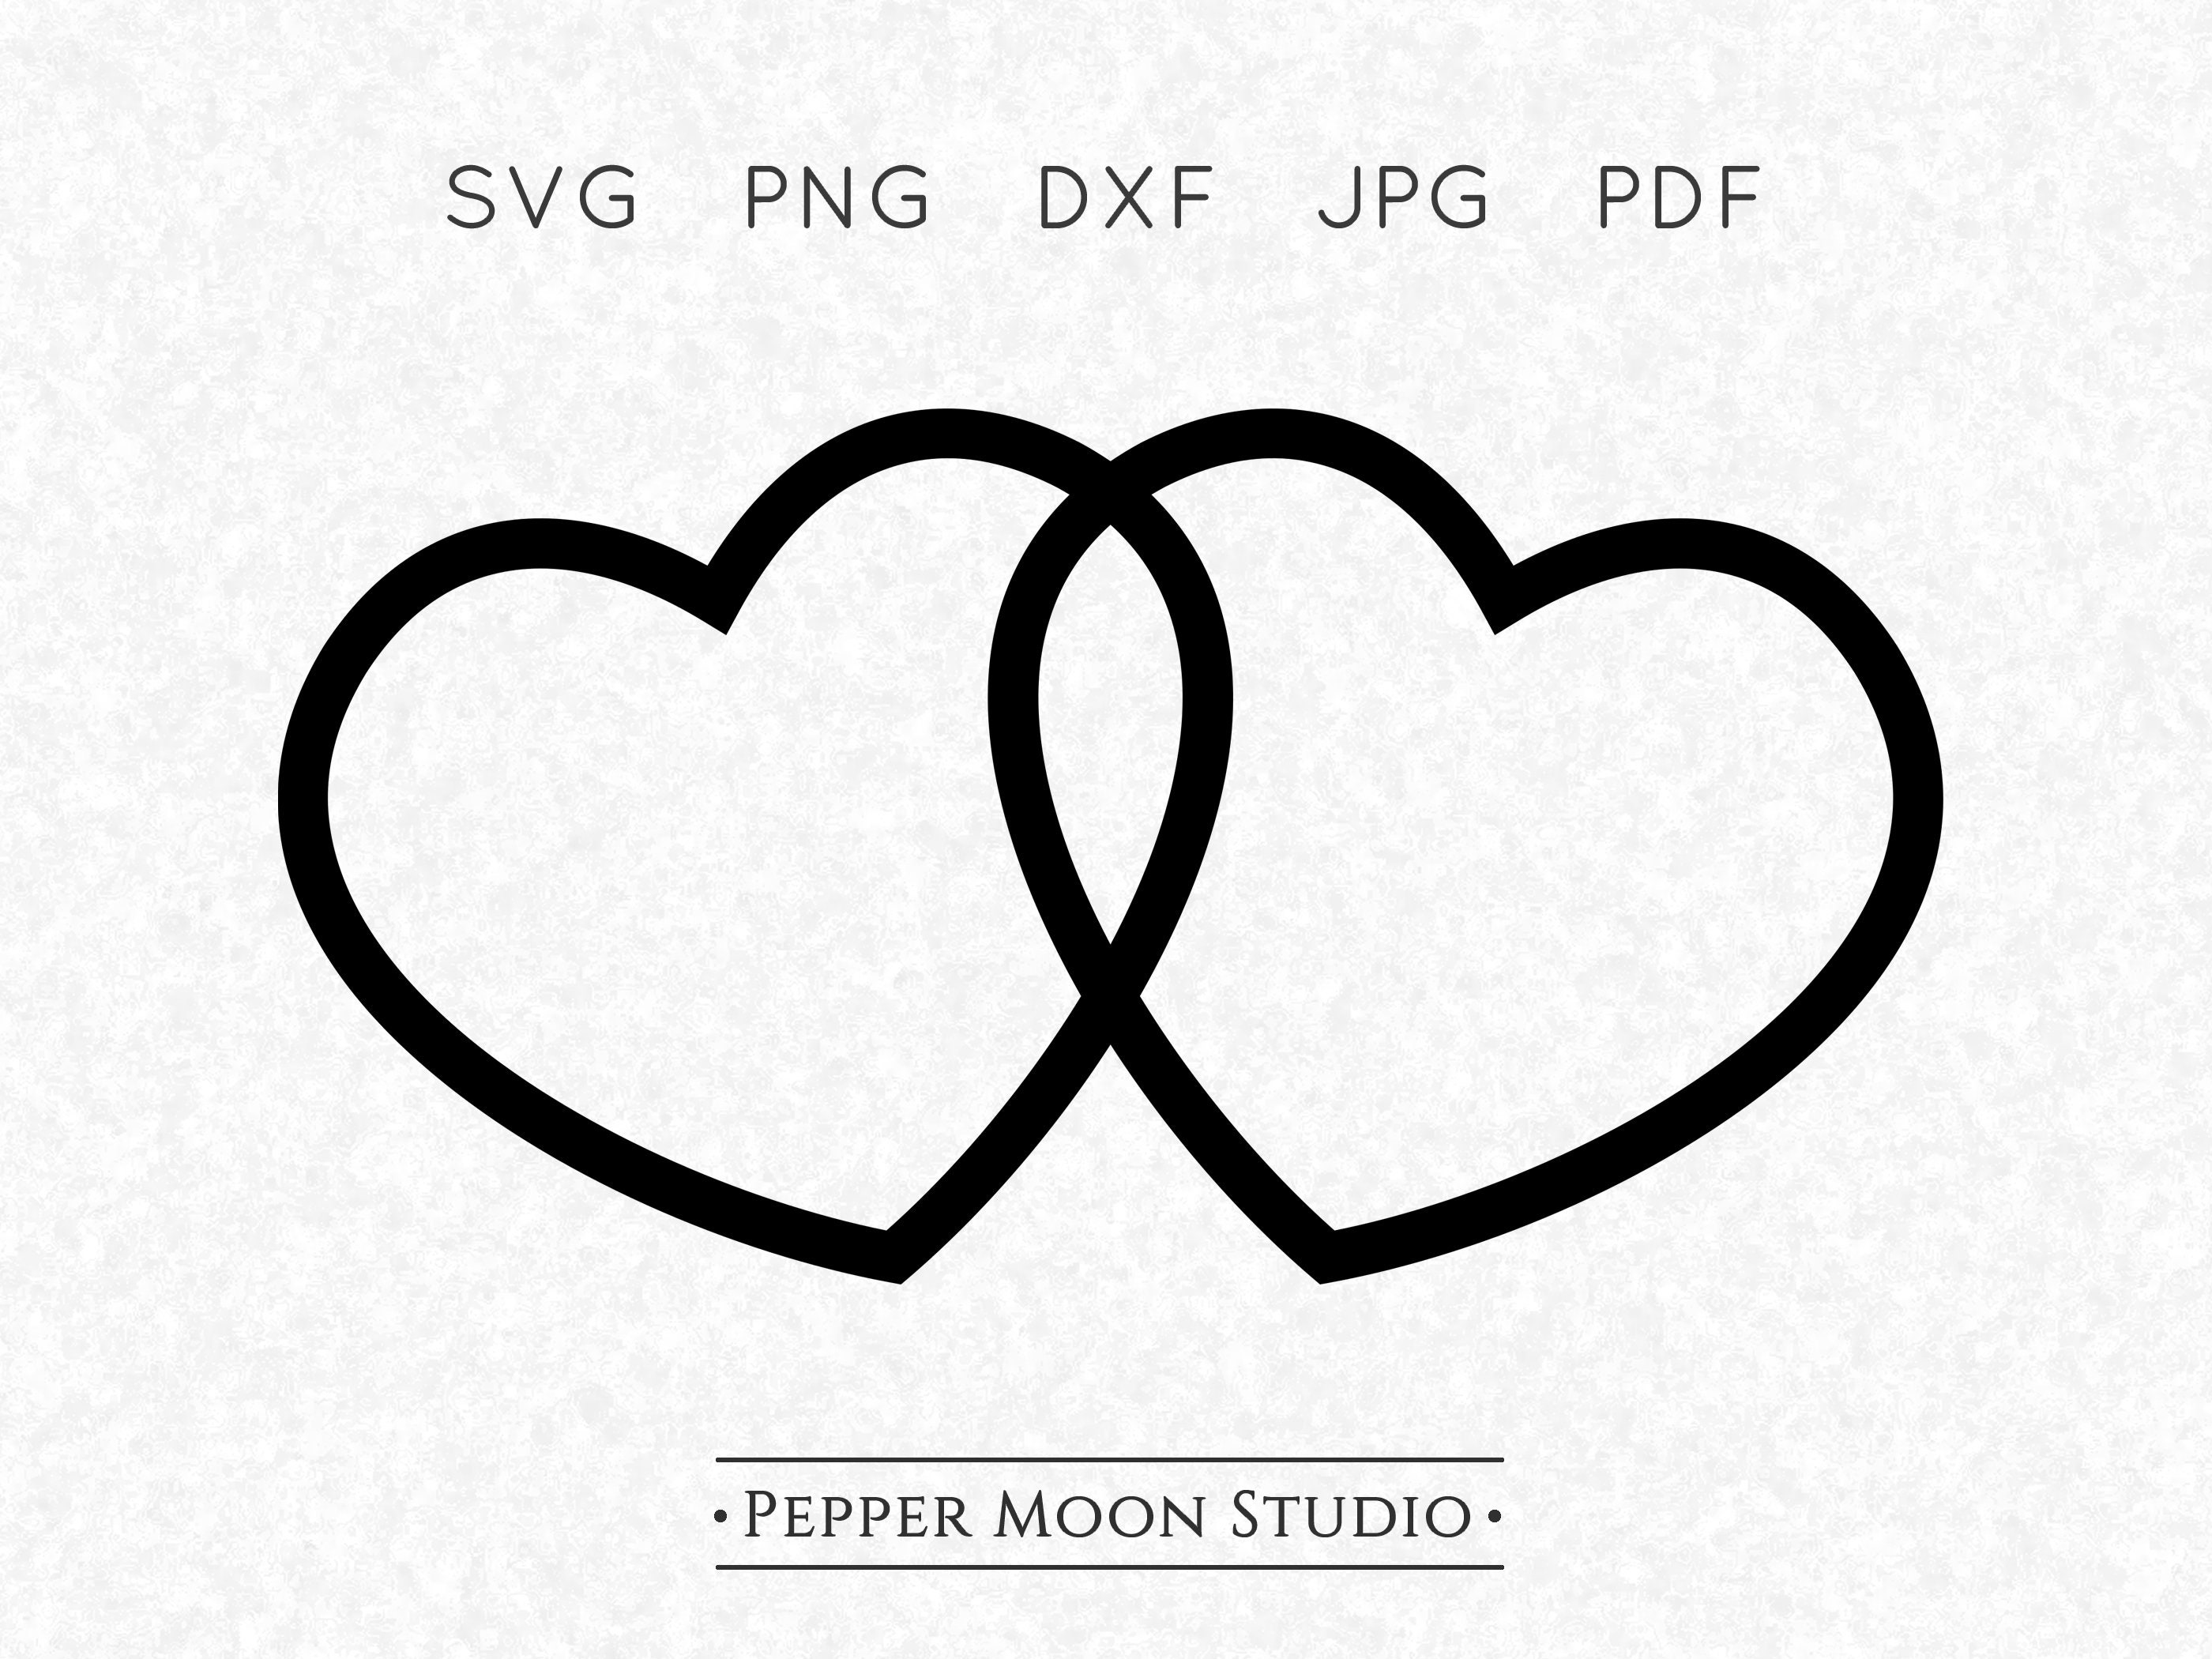 Double Heart SVG Two Hearts Linked Outline Love Frame Transparent  Background Svg Png Dxf Pdf Jpg Files Instant Digital Download 